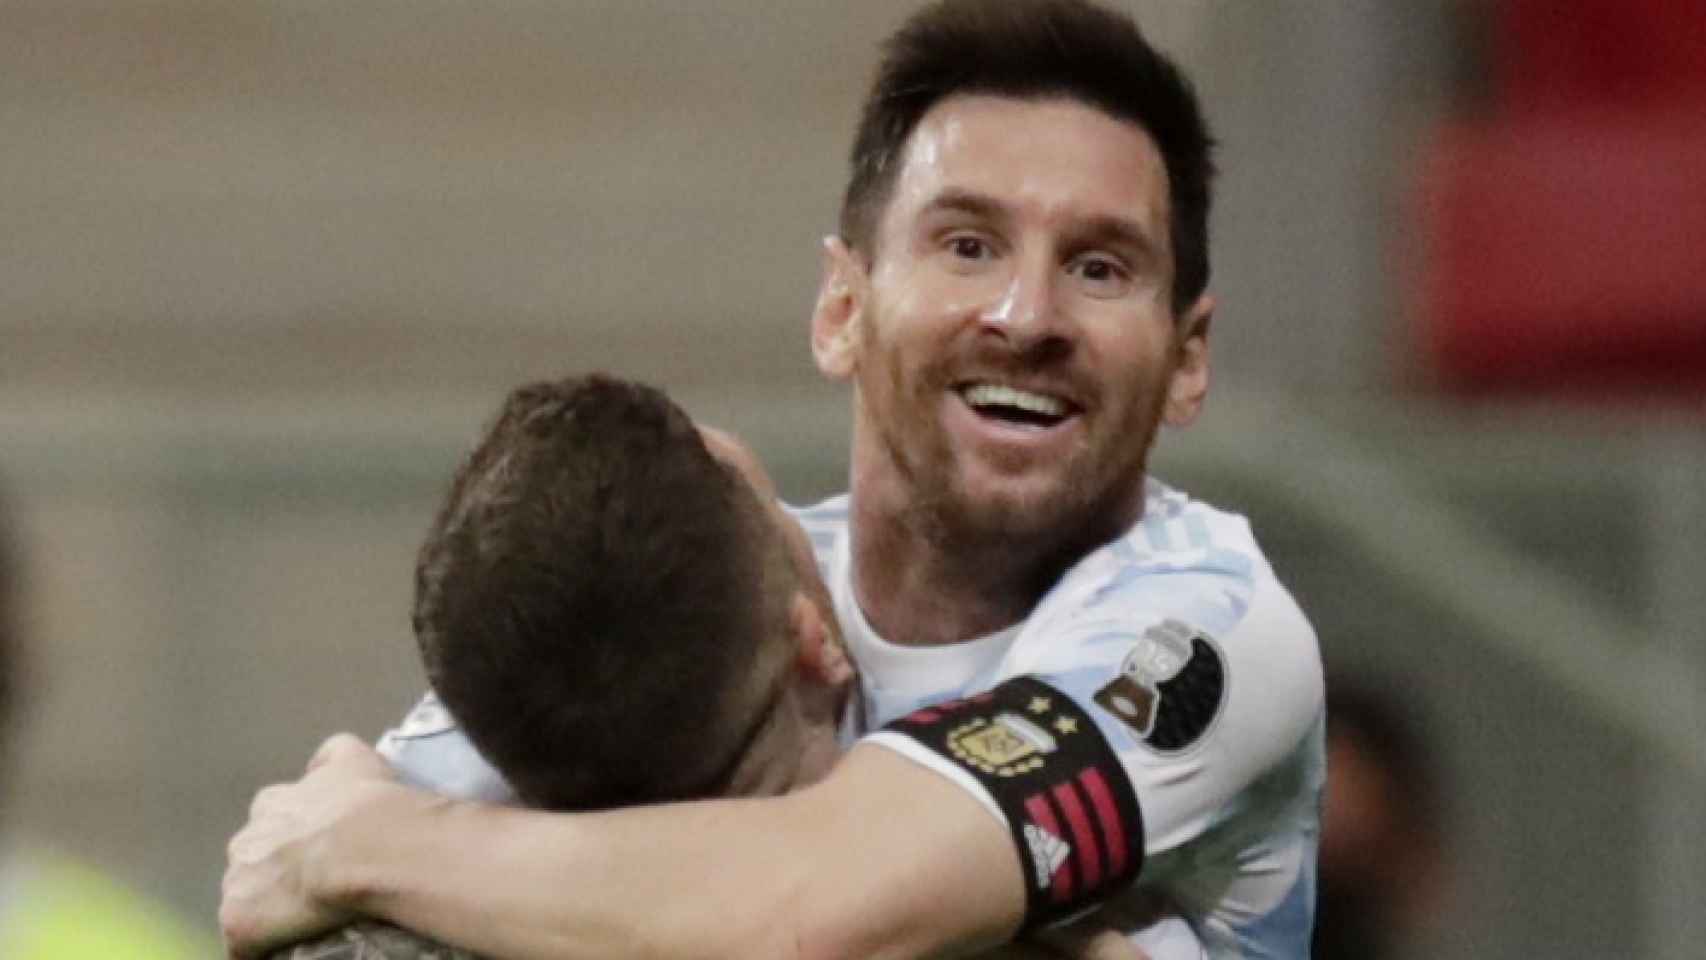 Messi celebrando un gol con Argentina